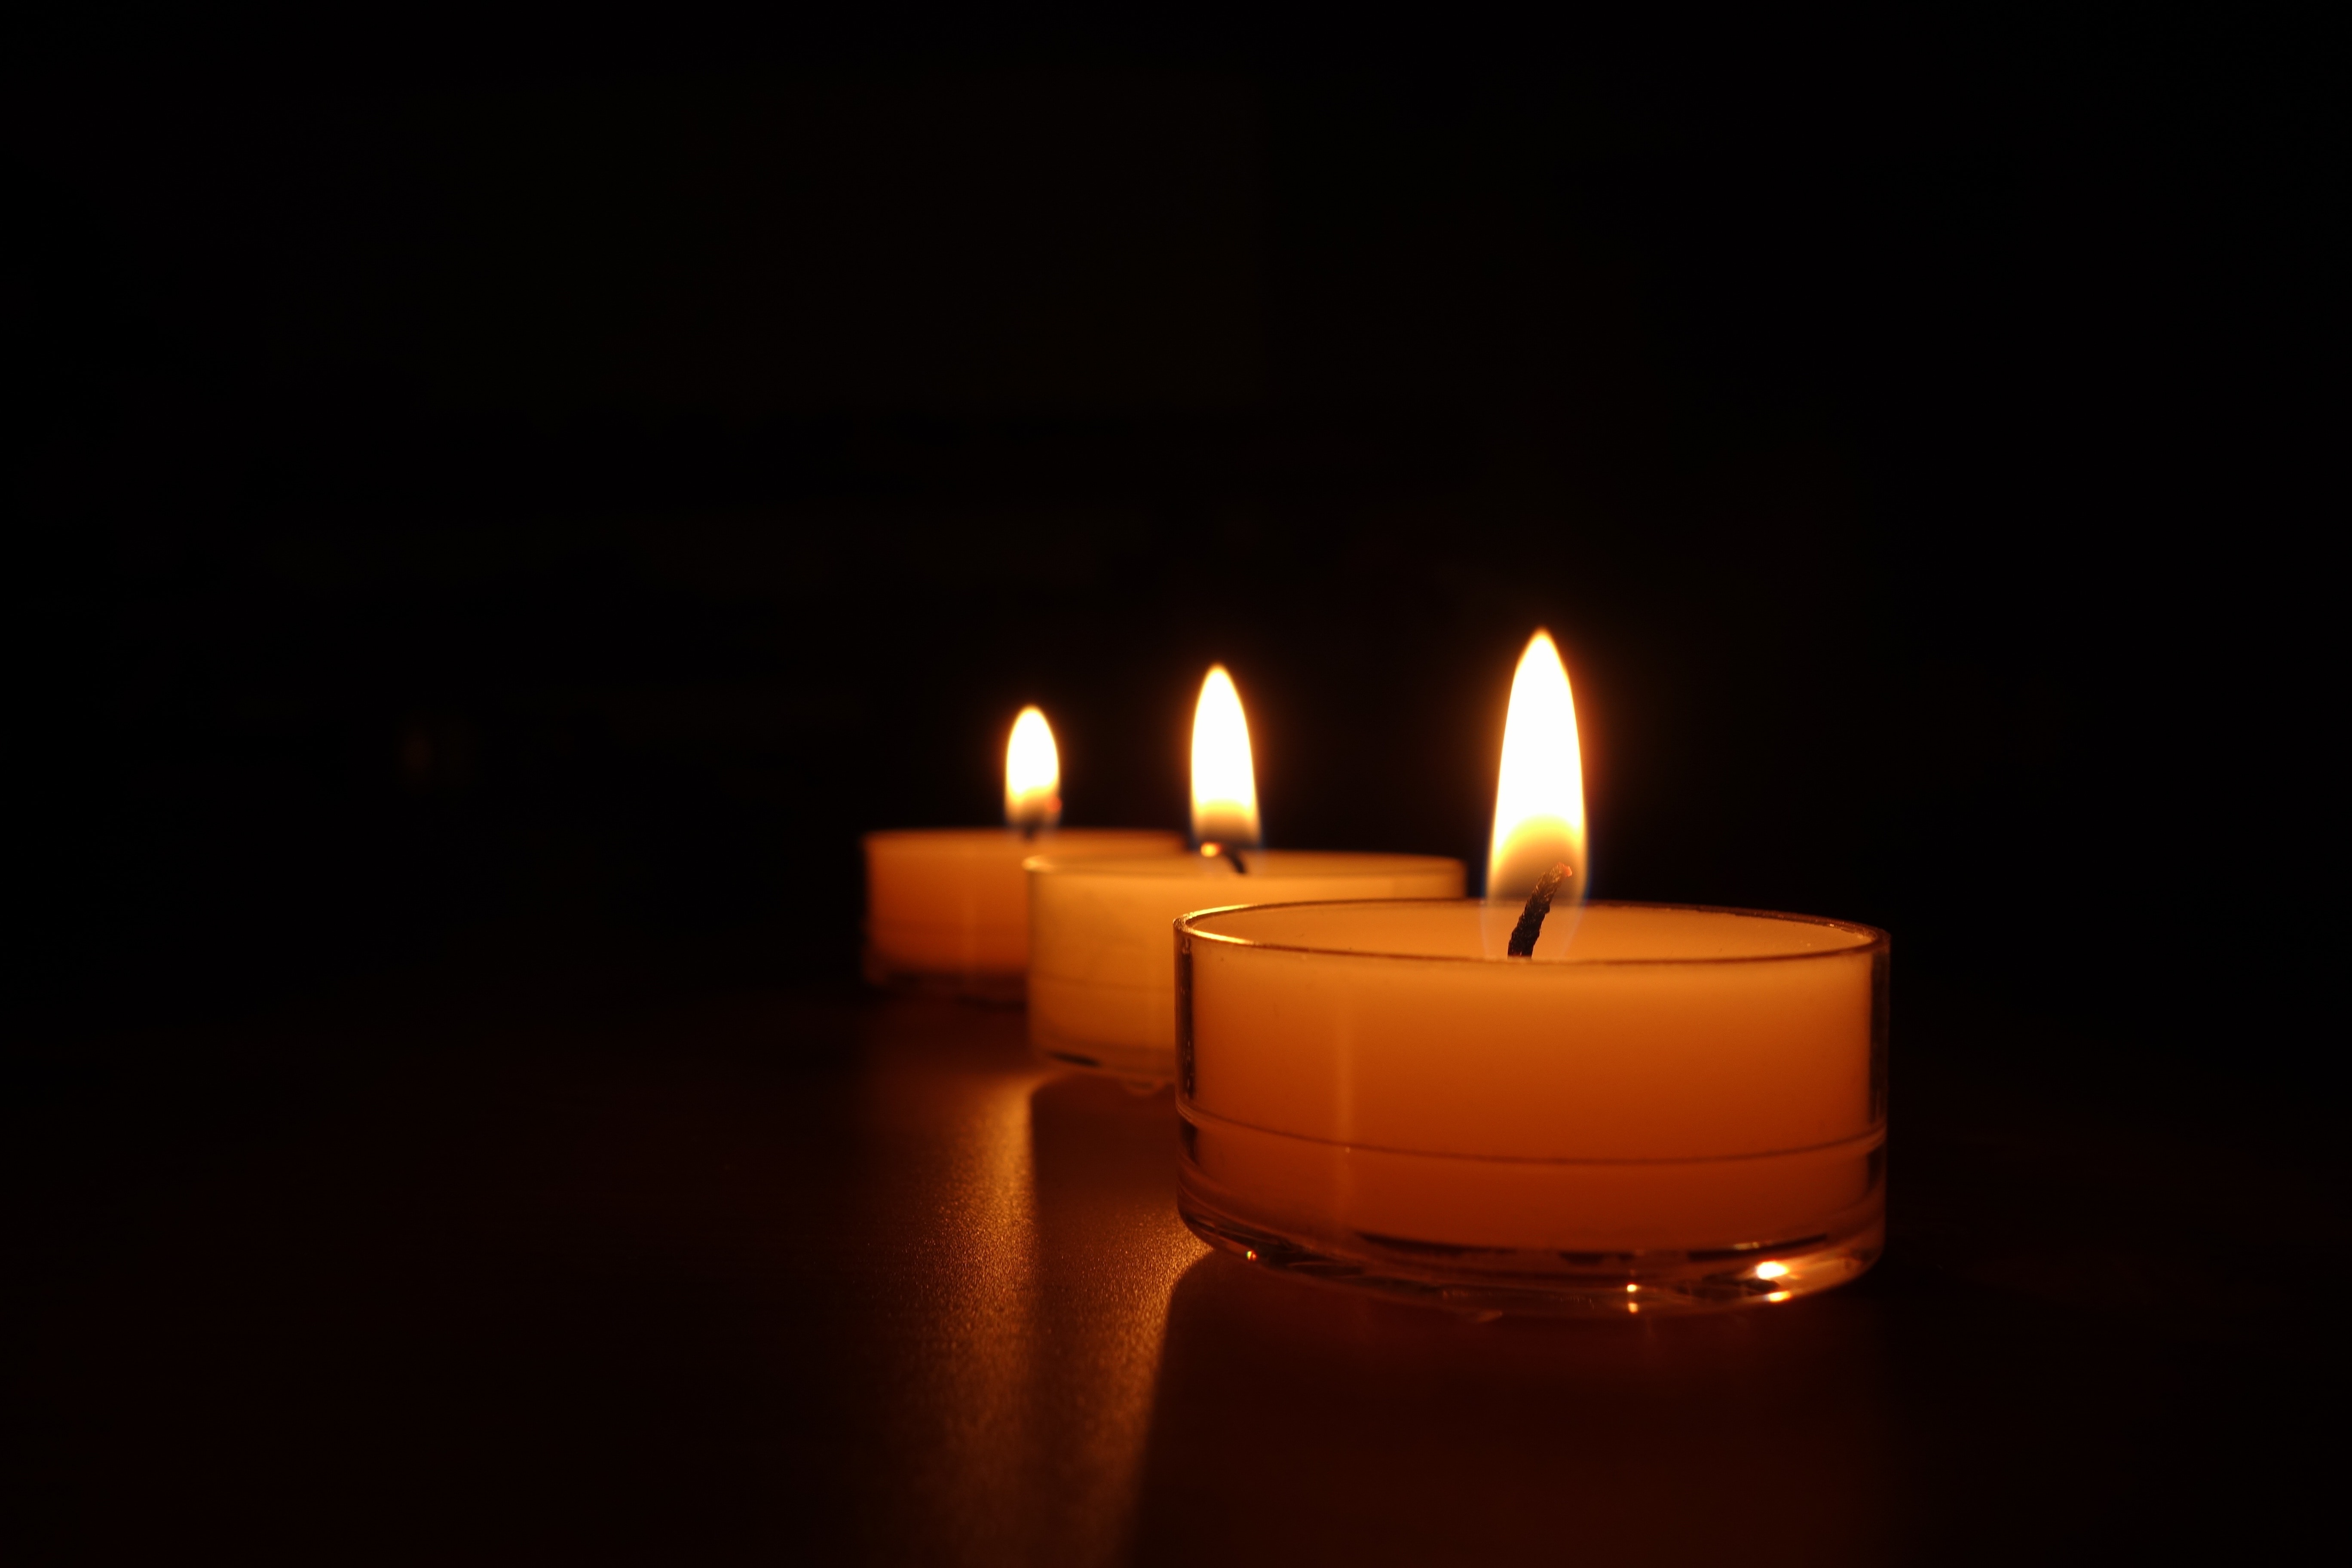 На столе лежит покойник ярко свечи горят это был убит разбойник